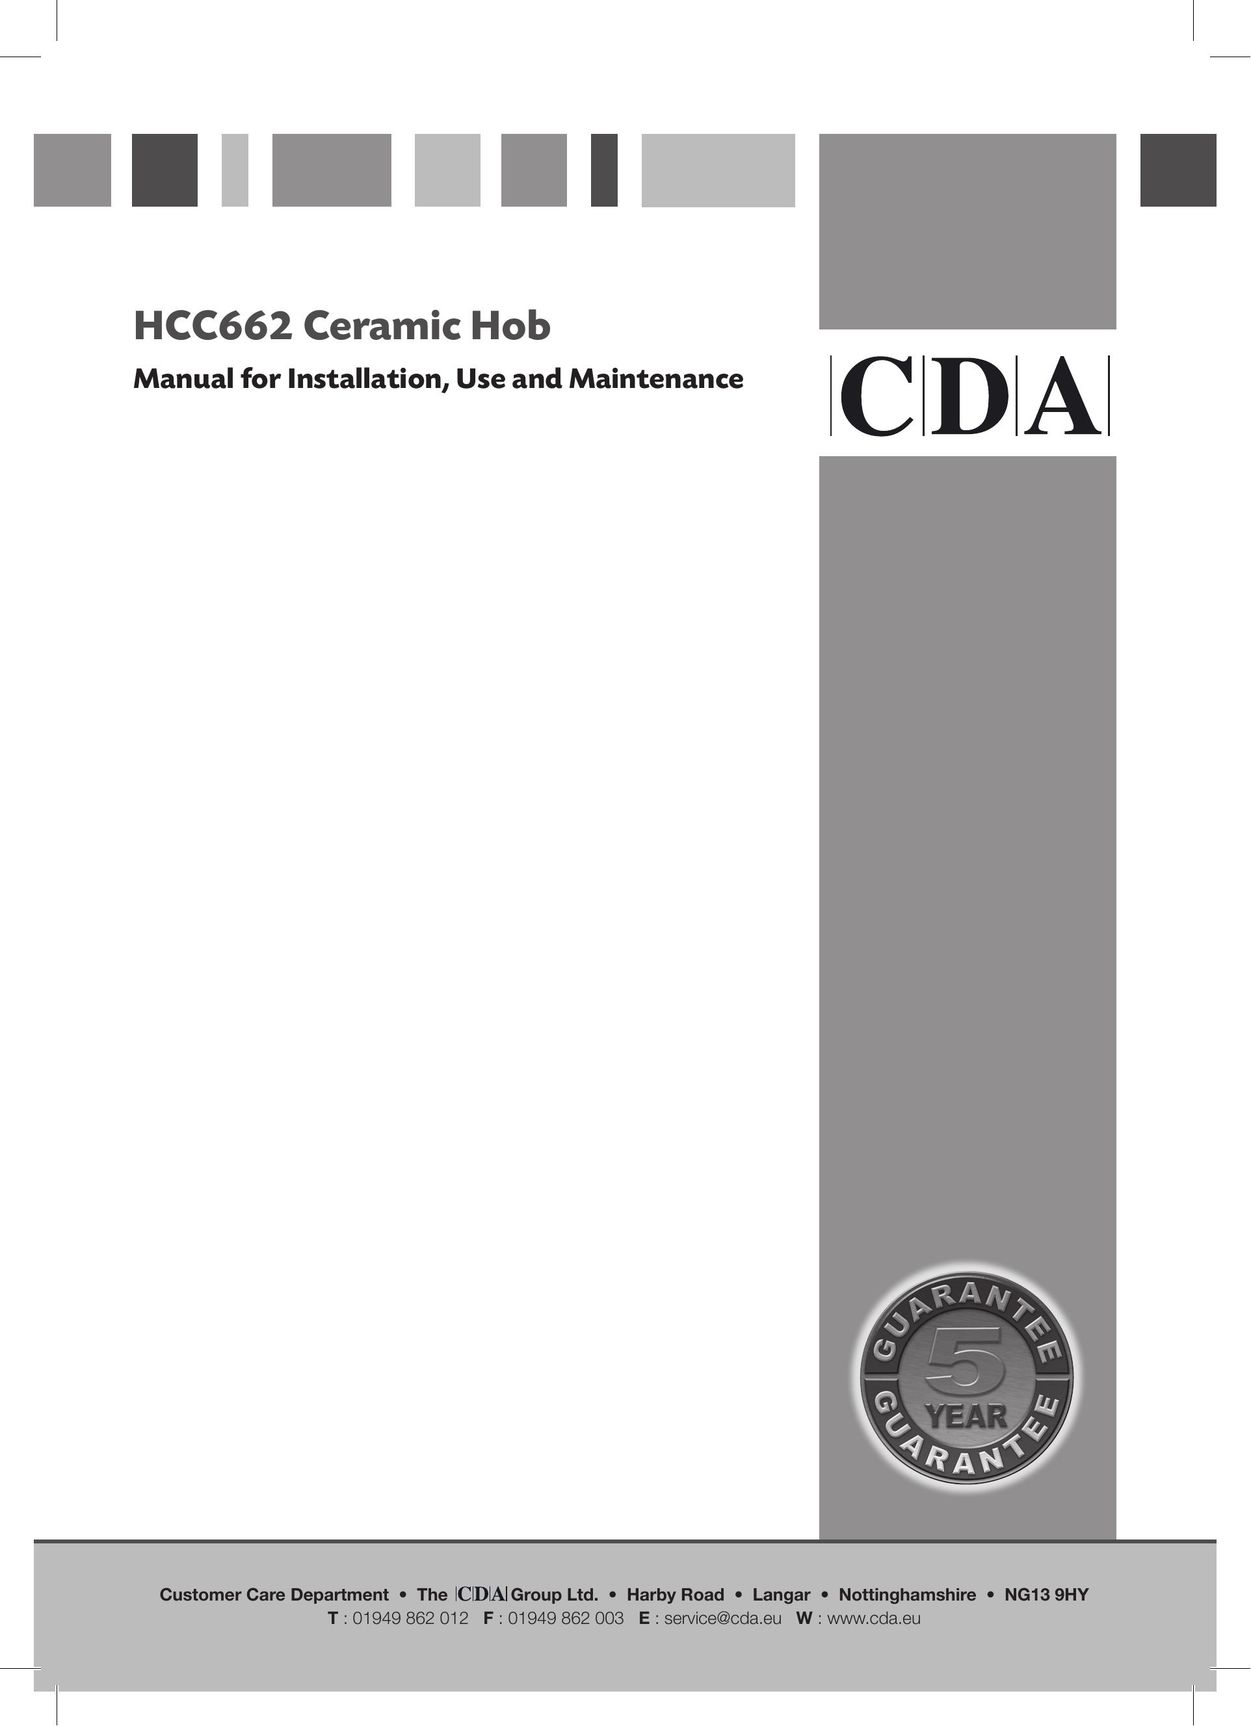 CDA HCC662 Cooktop User Manual